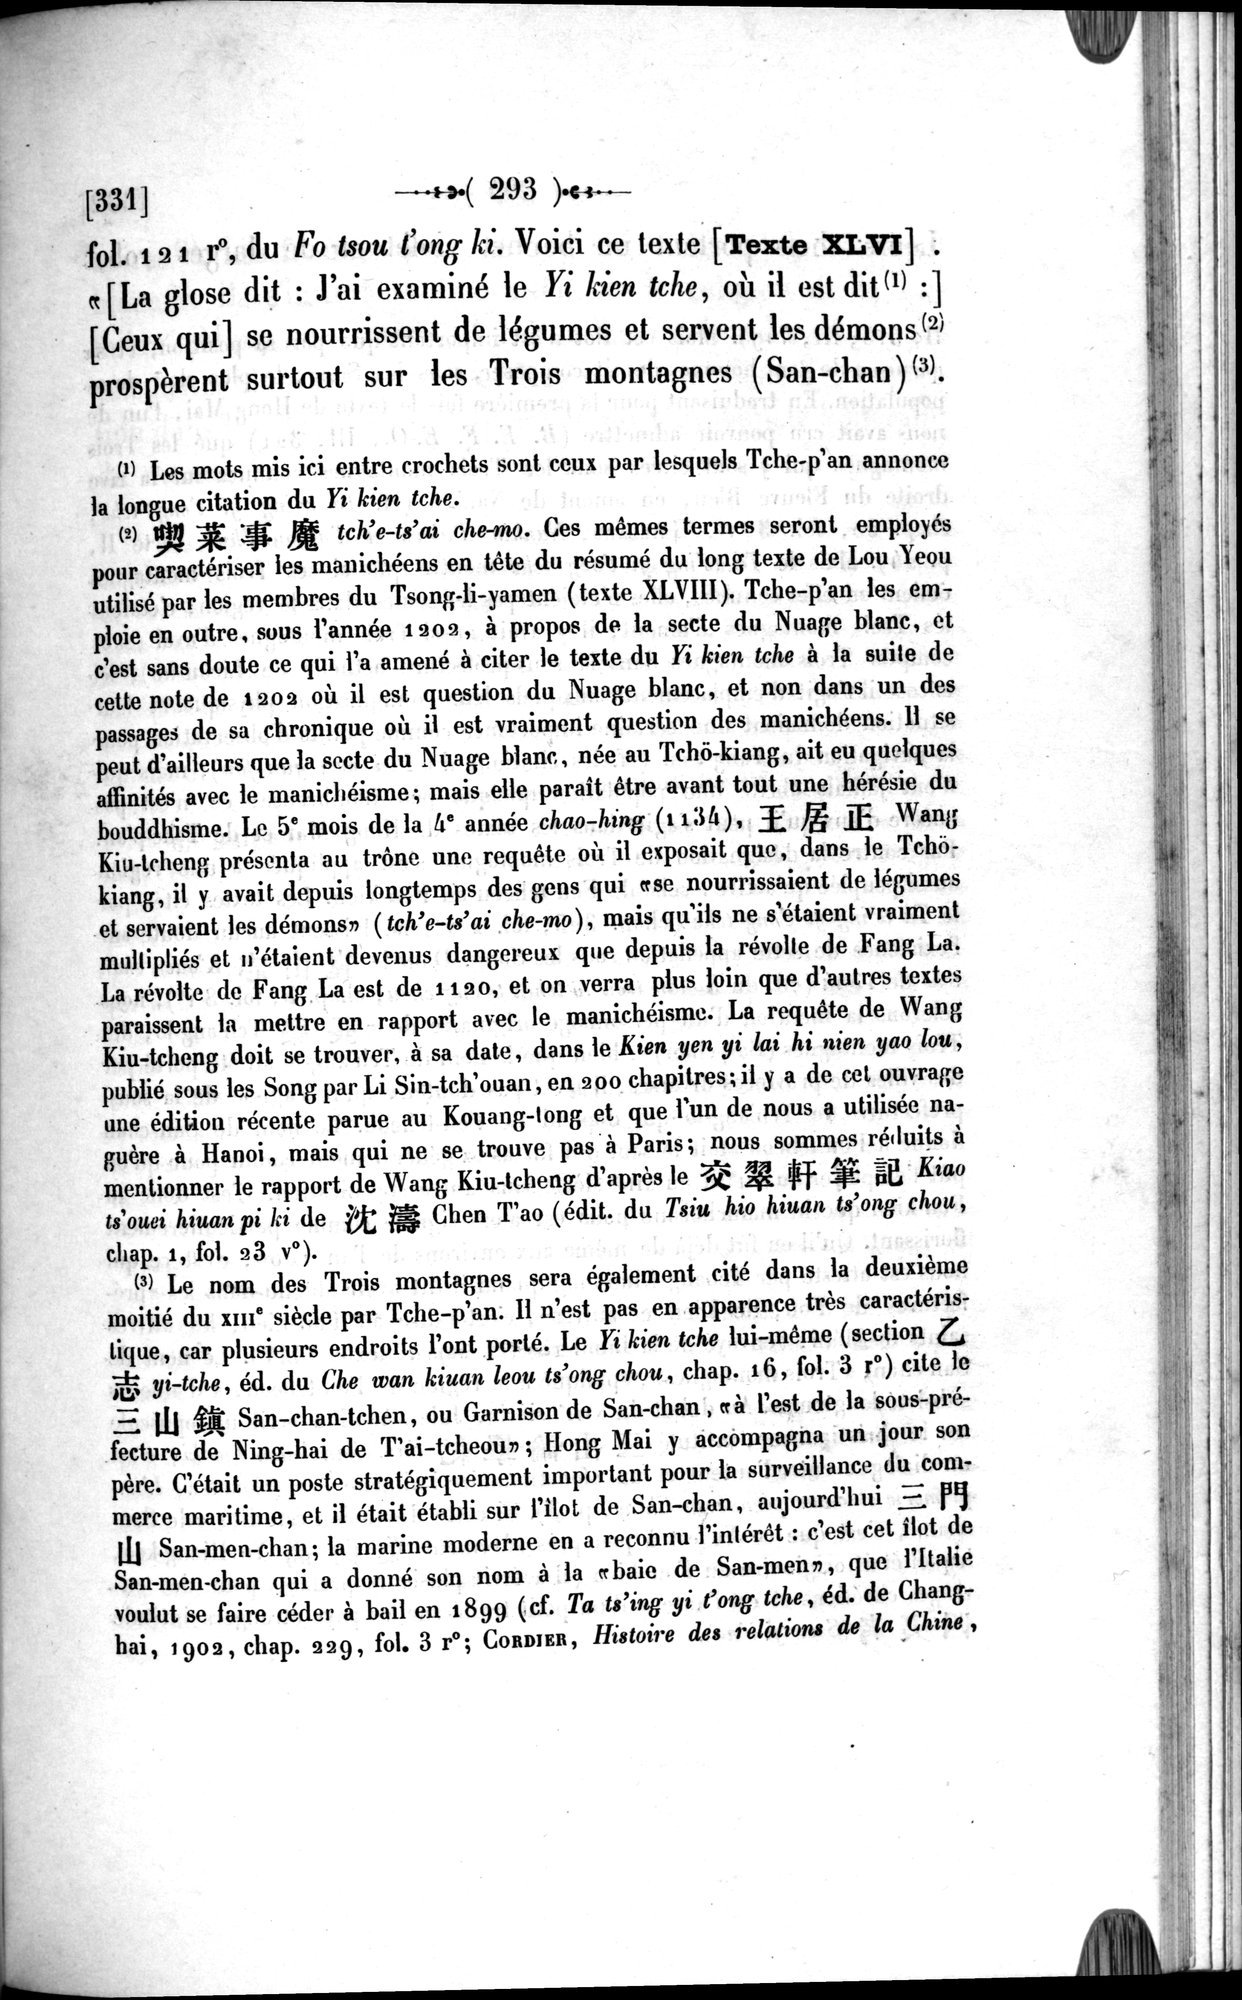 Un traité manichéen retrouvé en Chine : vol.1 / Page 303 (Grayscale High Resolution Image)